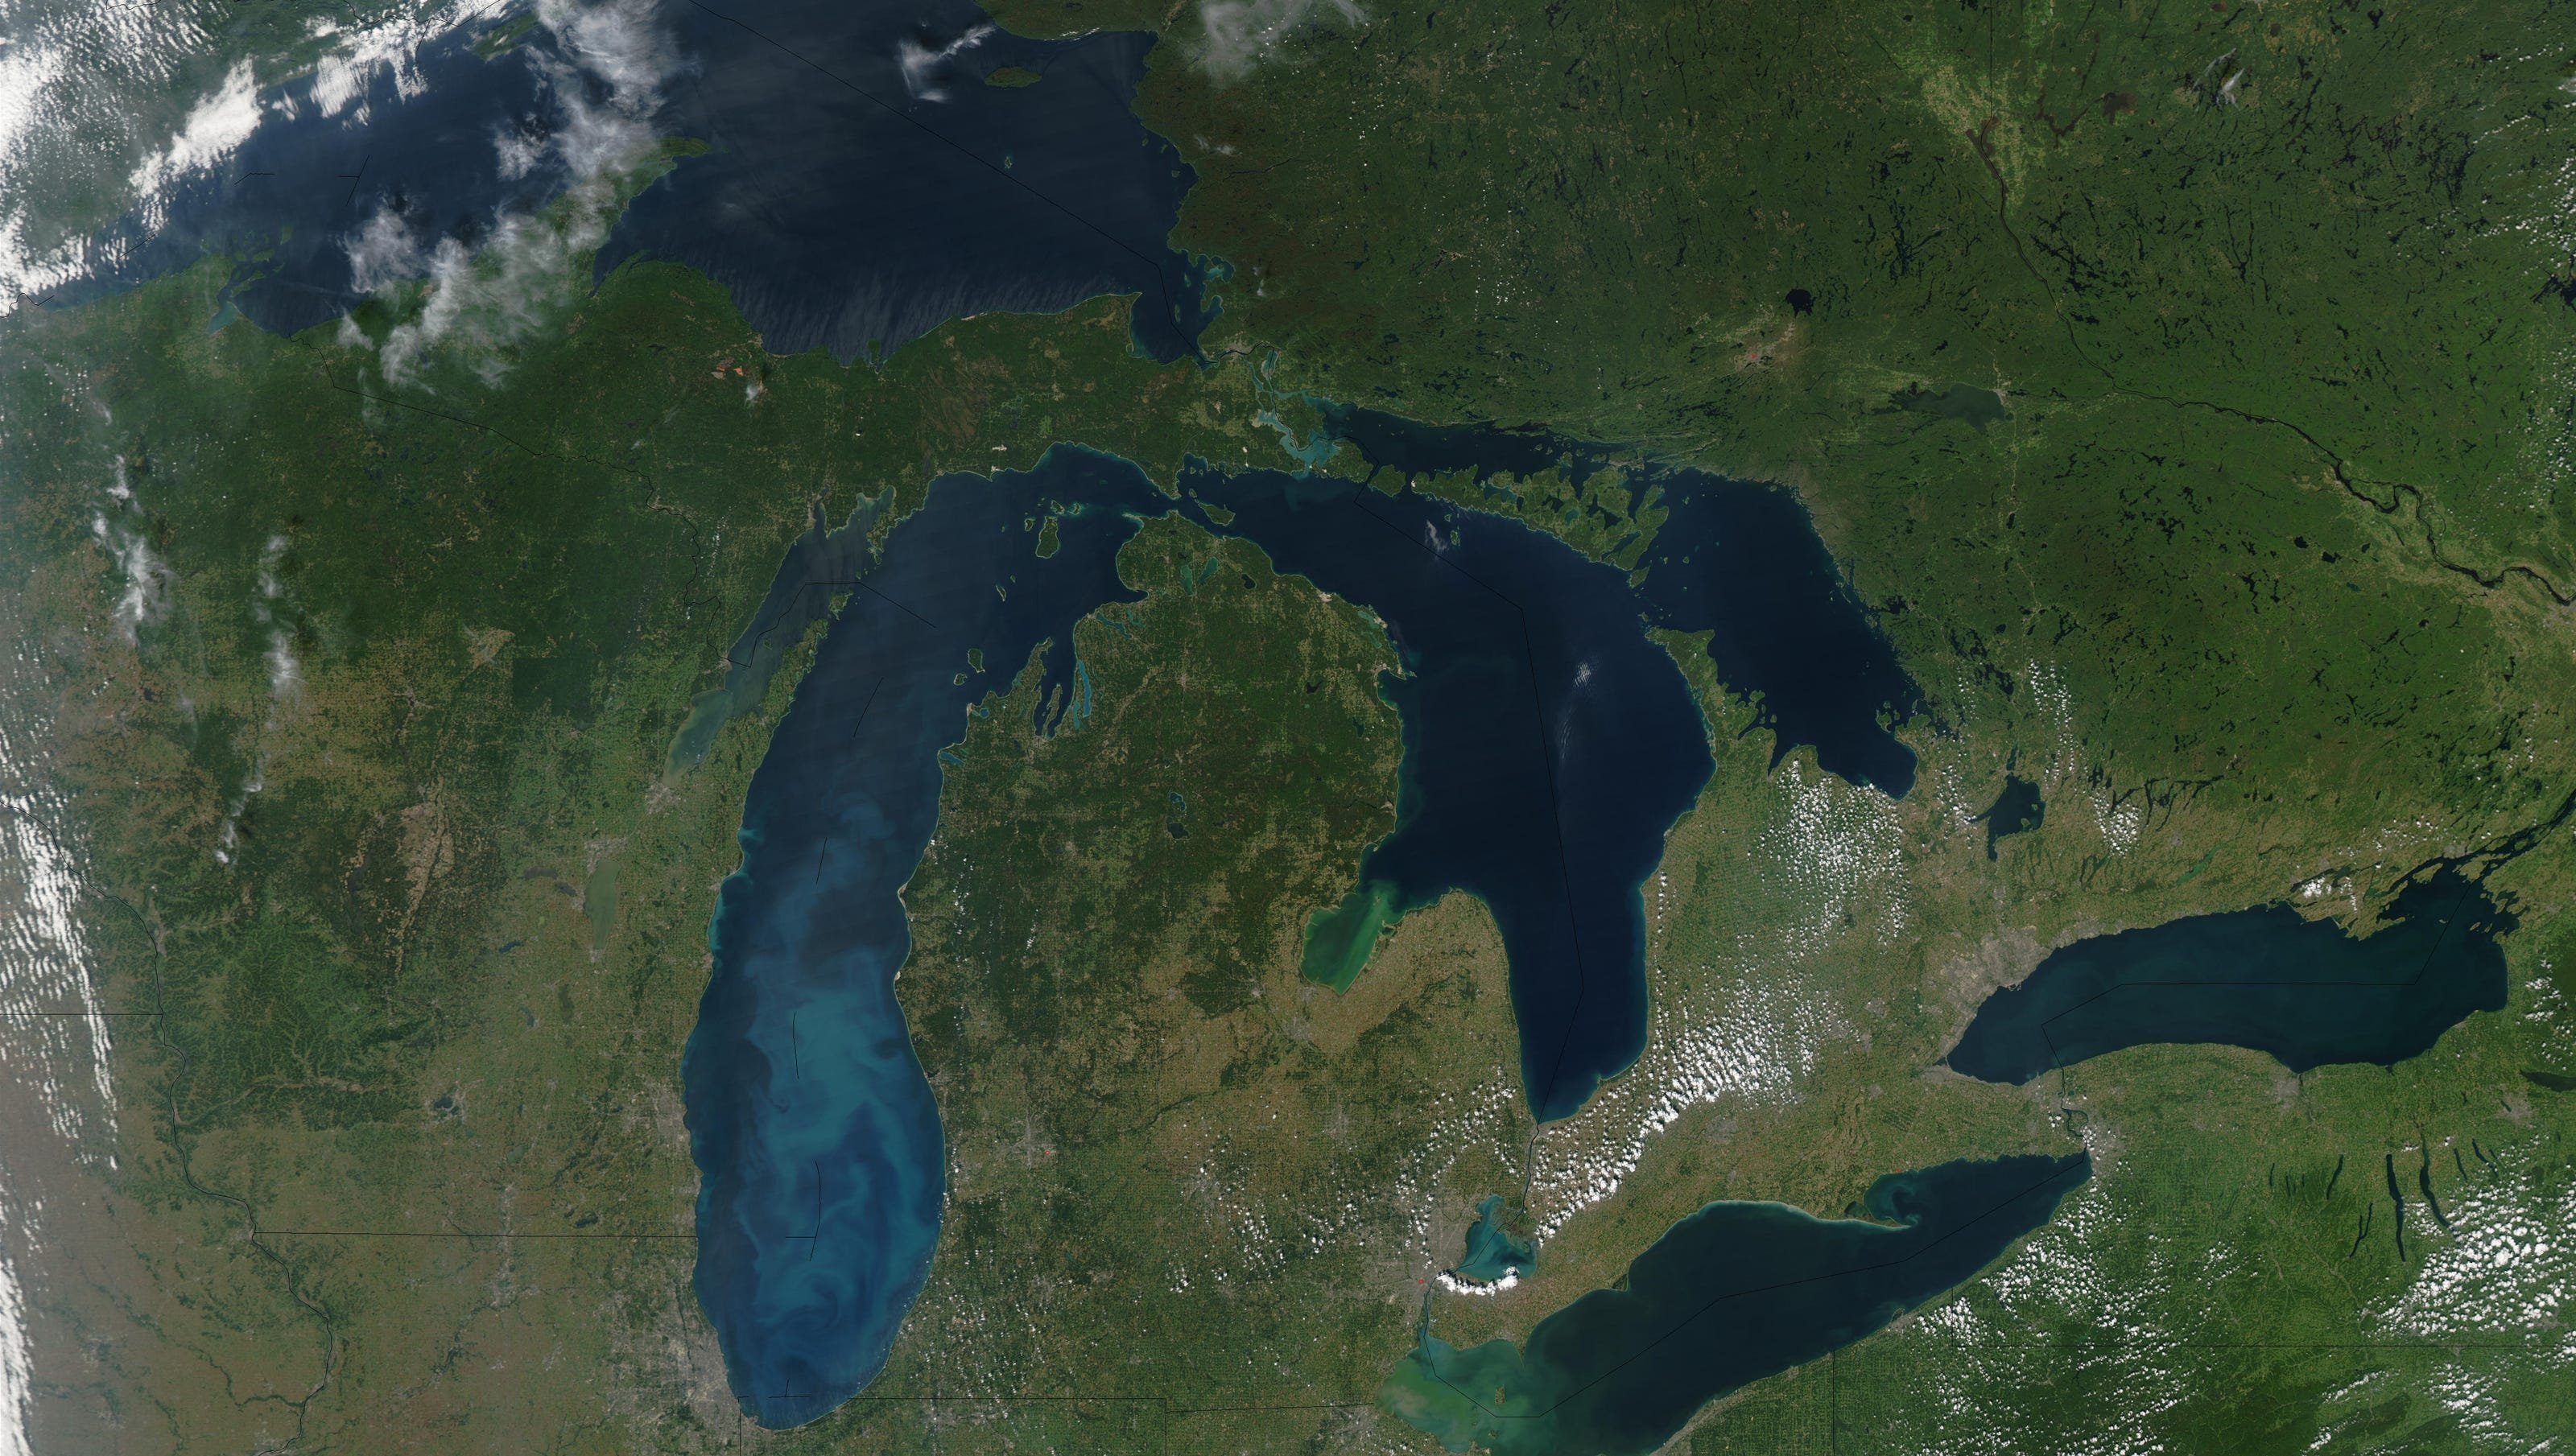 Озеро Гурон Северная Америка. Великие озера (бассейн Атлантического океана). Великие американские озёра верхнее Гурон Мичиган Эри Онтарио. Великие американские озера Северной Америки. Какая река соединяет великие озера